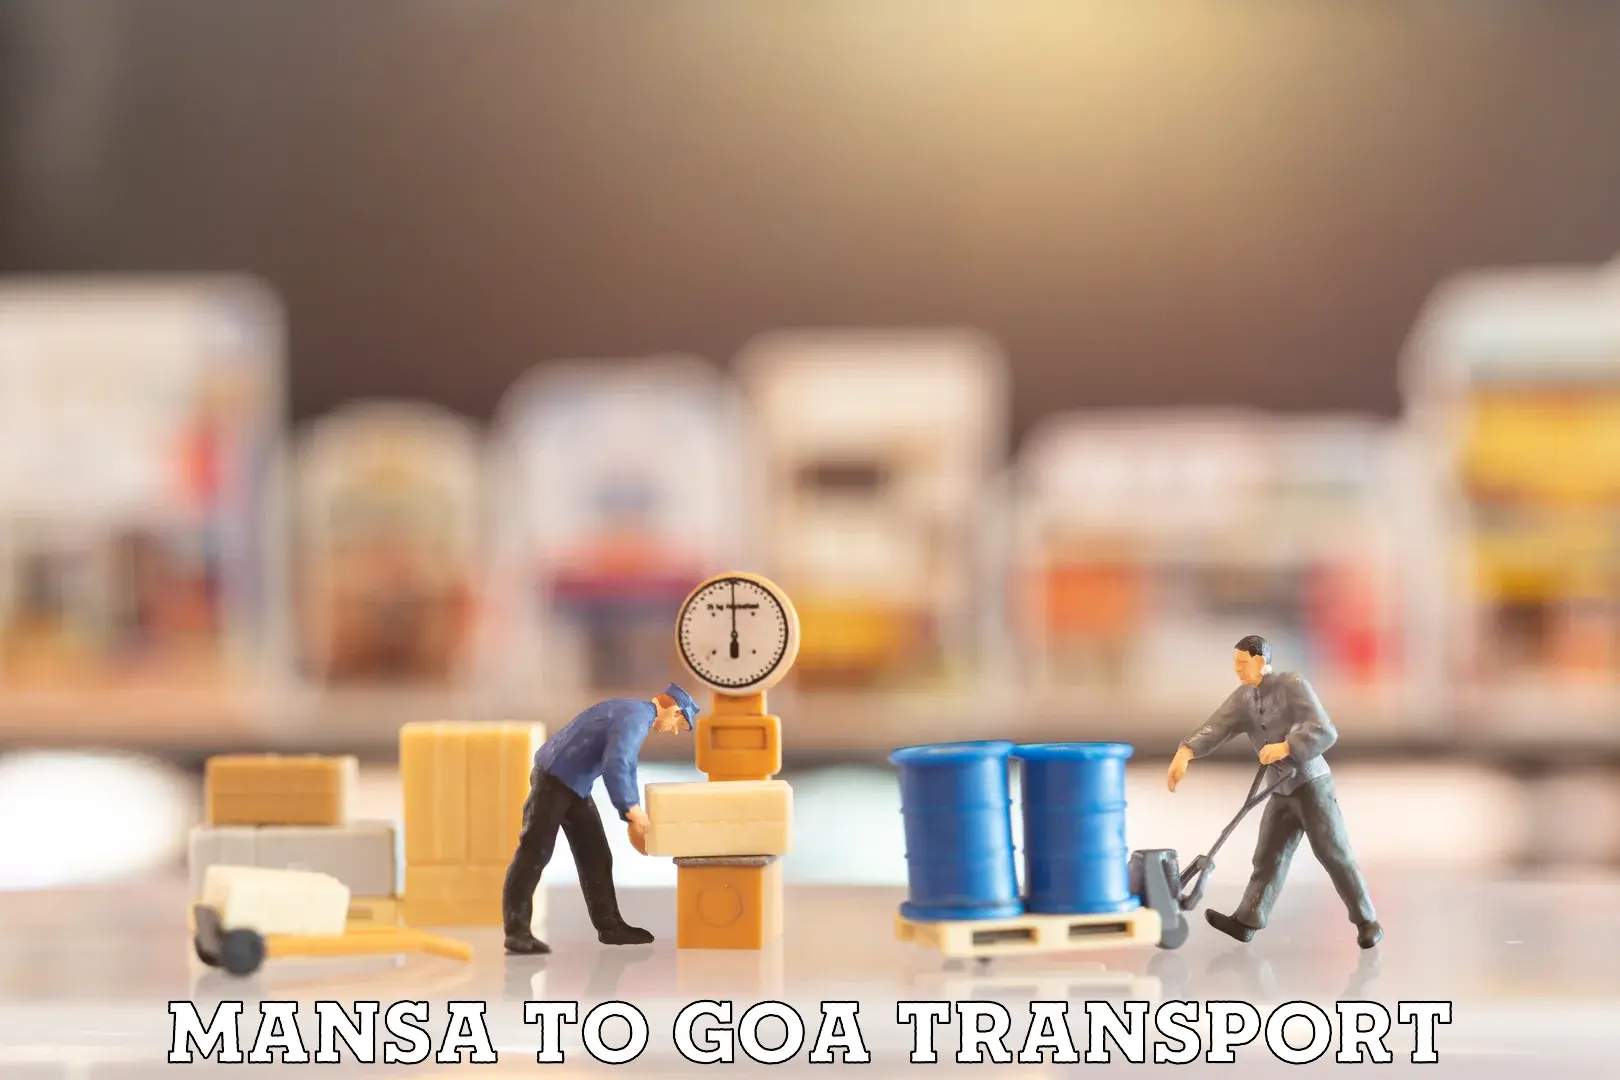 Transport shared services Mansa to Mormugao Port